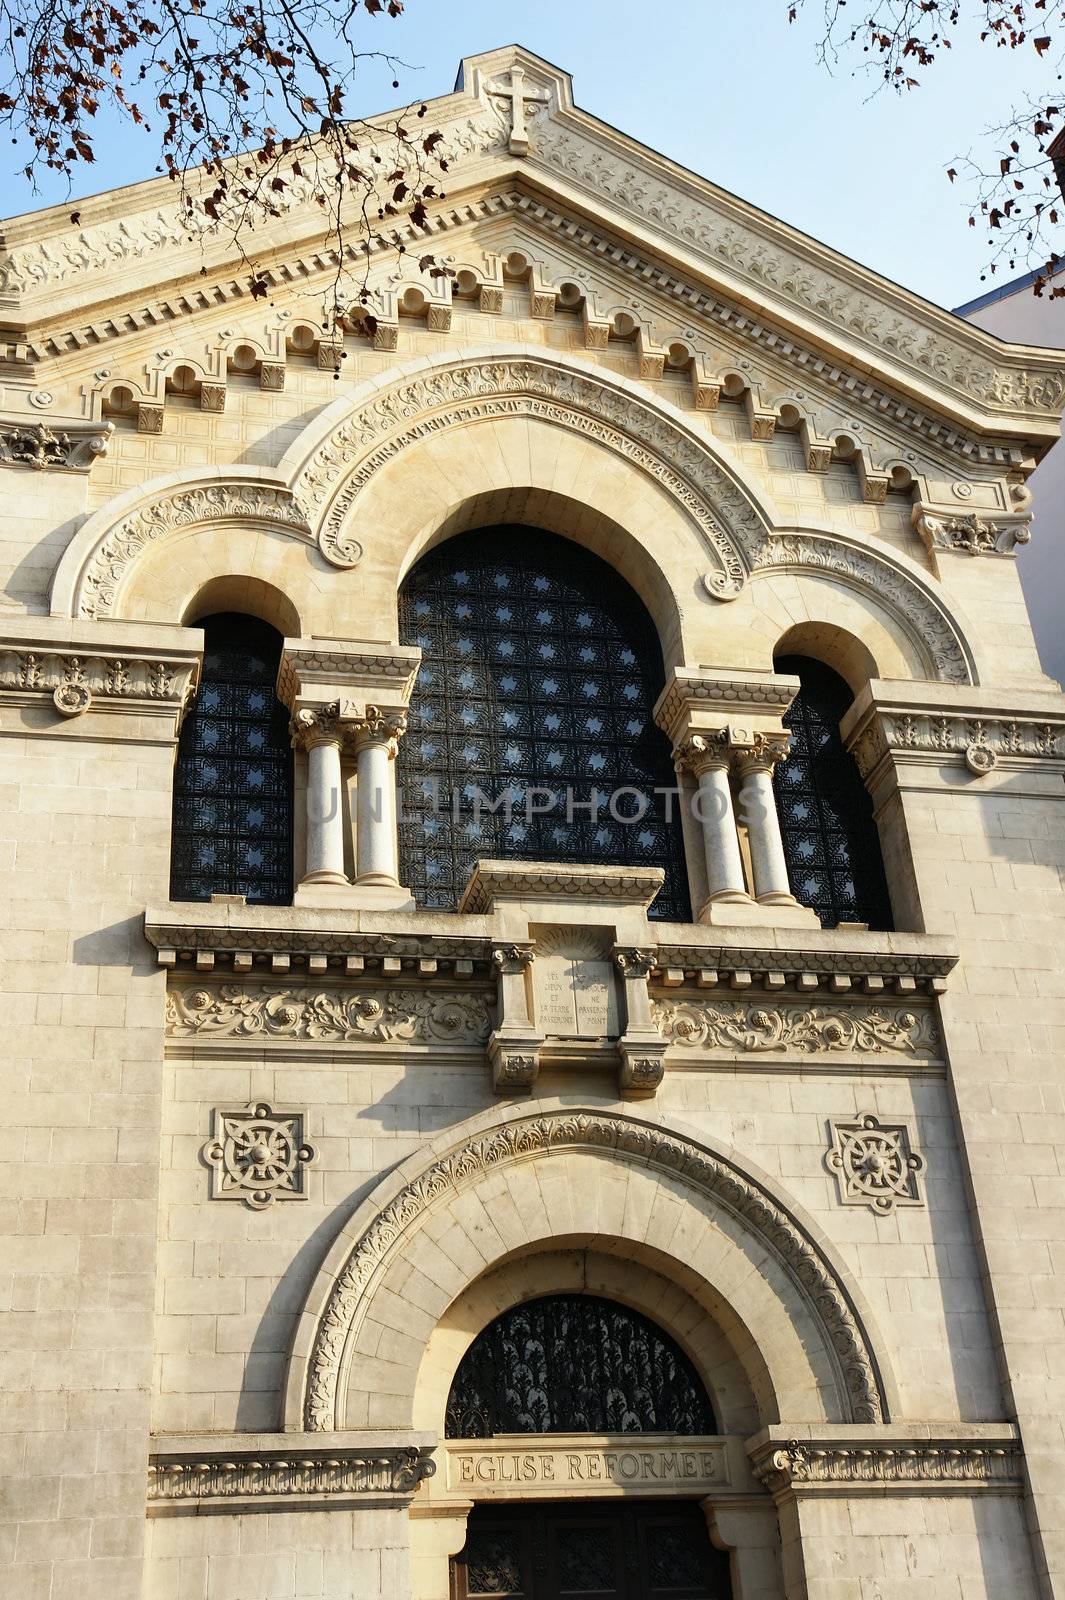 Church facade by Mirage3